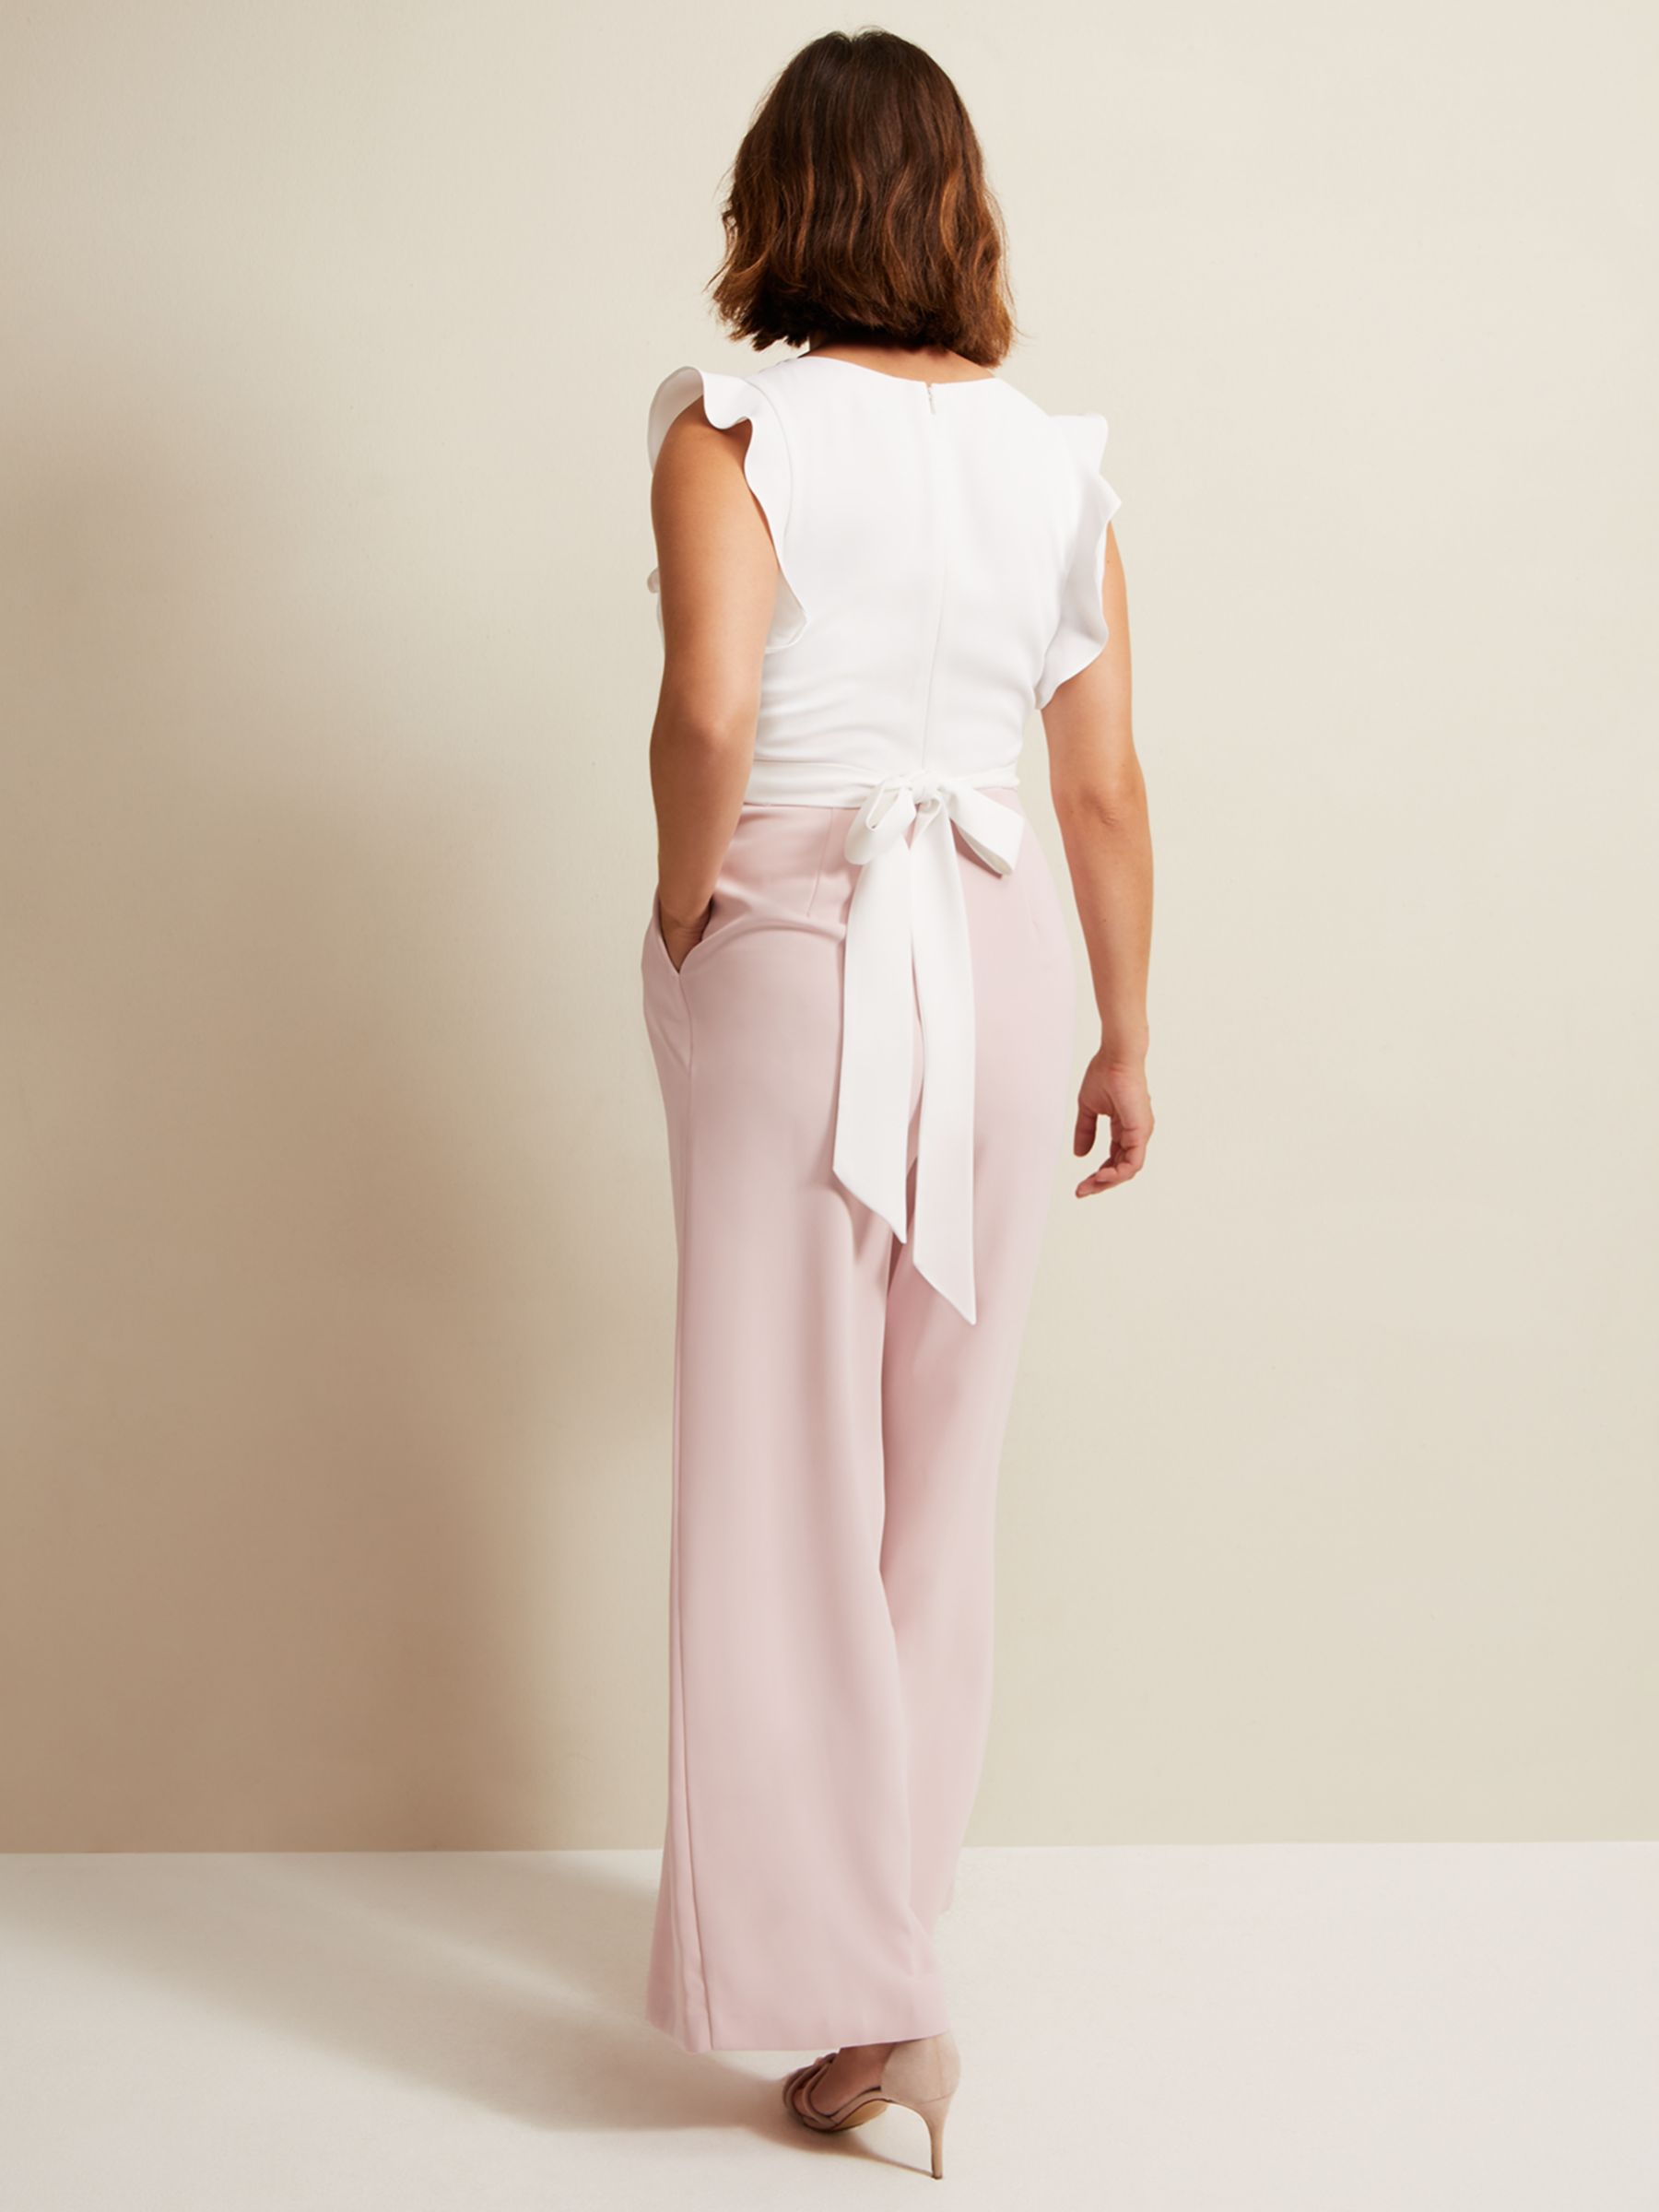 Phase Eight Ayla Ruffle Wrap Jumpsuit, Ivory/Pink, 26